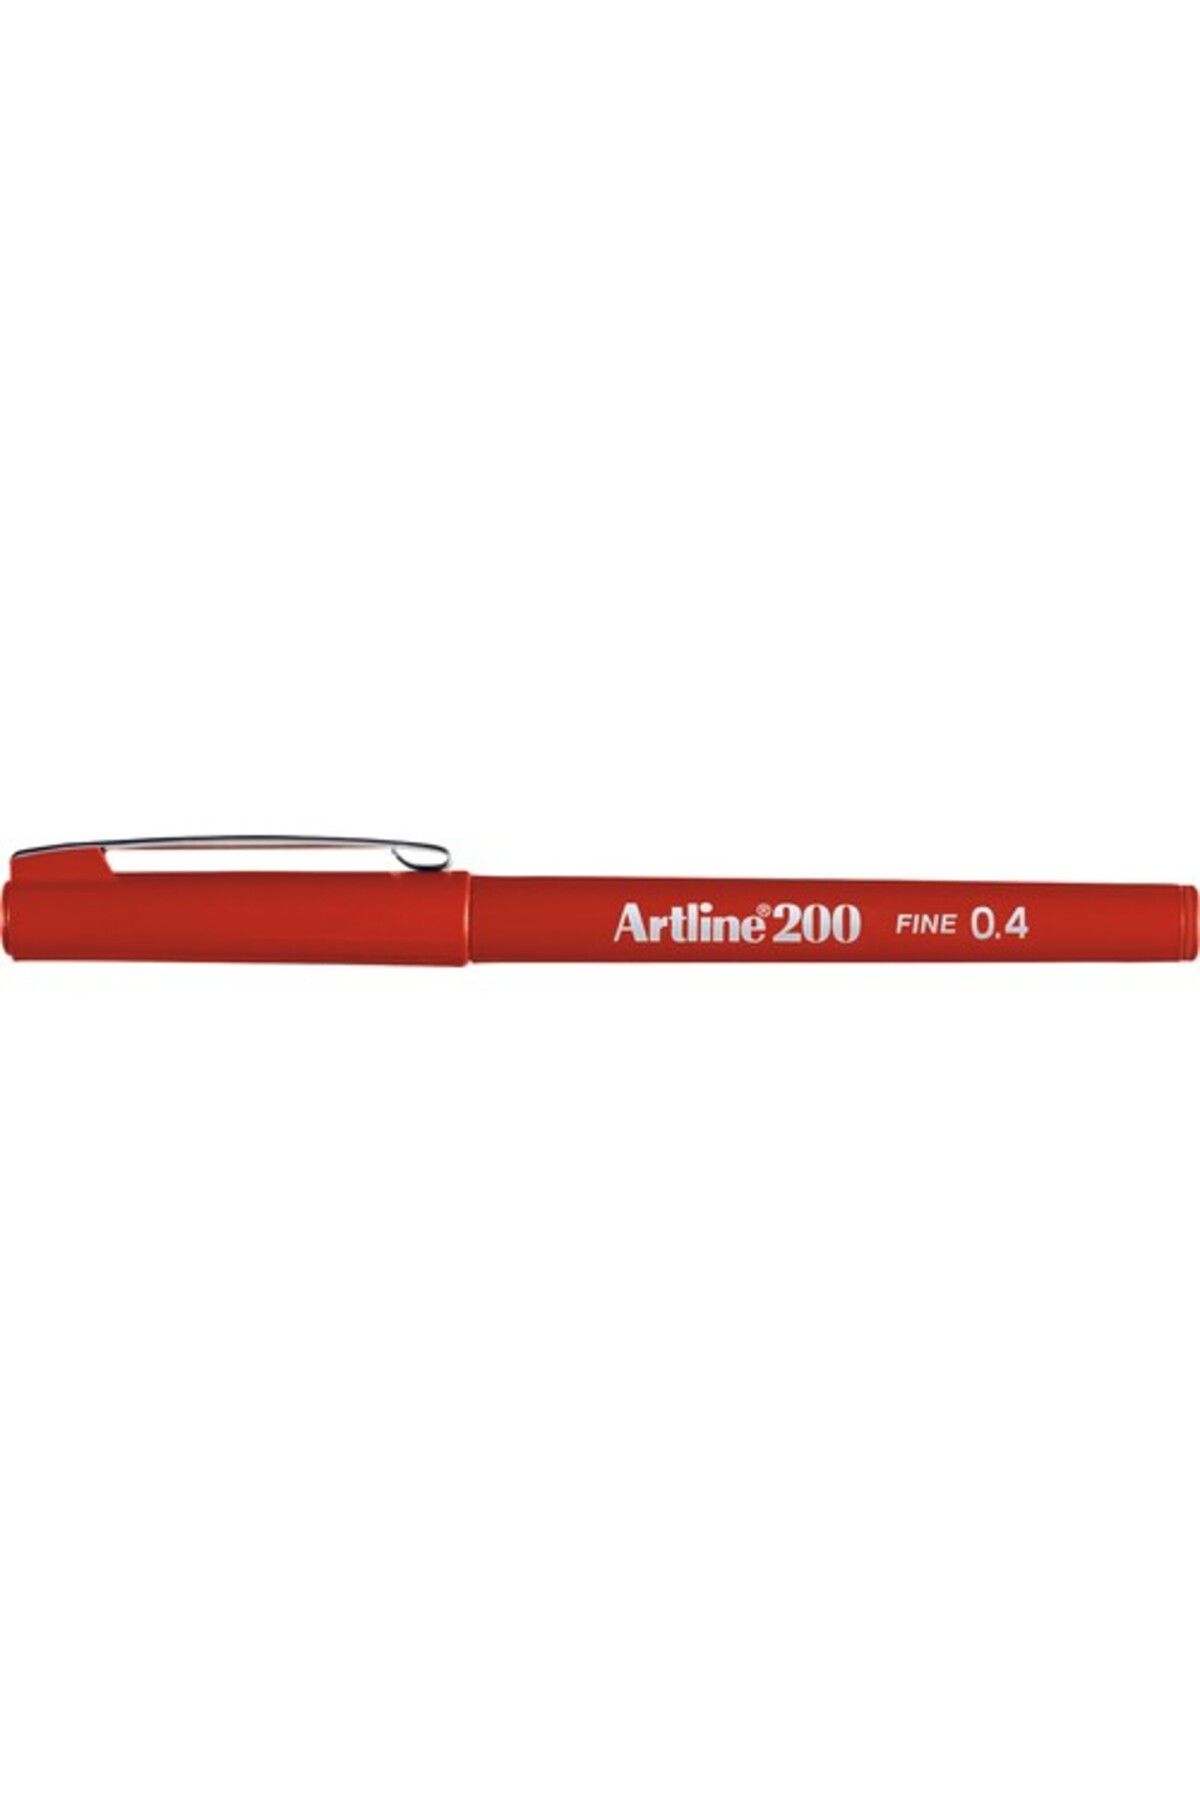 artline 200n Fine Keçe Uçlu Yazı Kalemi 0,4 Mm Kırmızı